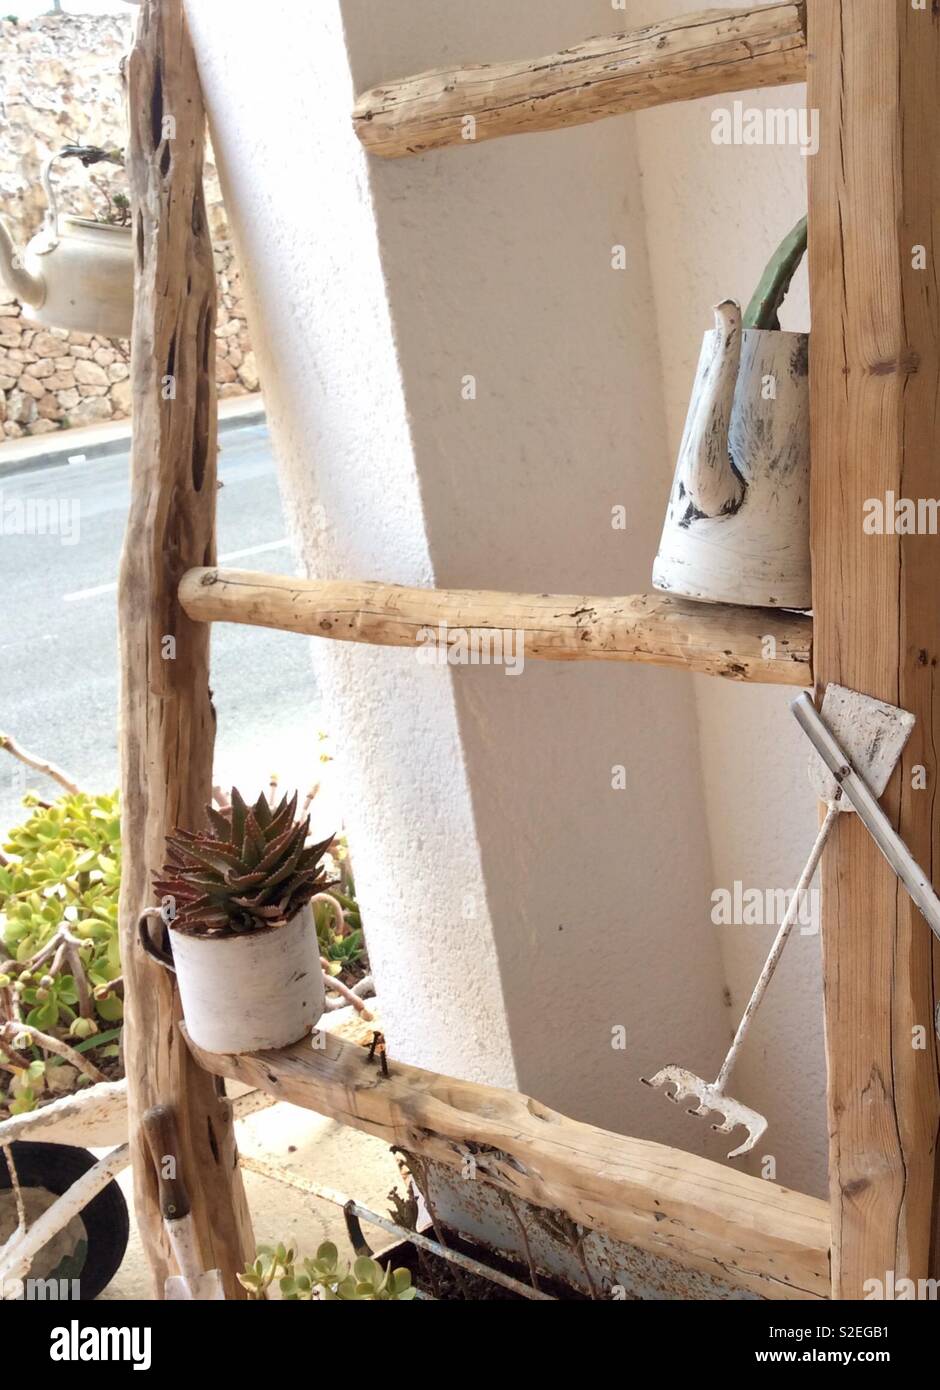 Utensilien angeordnet auf einem urigen Leiter einschließlich eine sukkulente Pflanze, alte Teekannen und eine Gabel Stockfoto